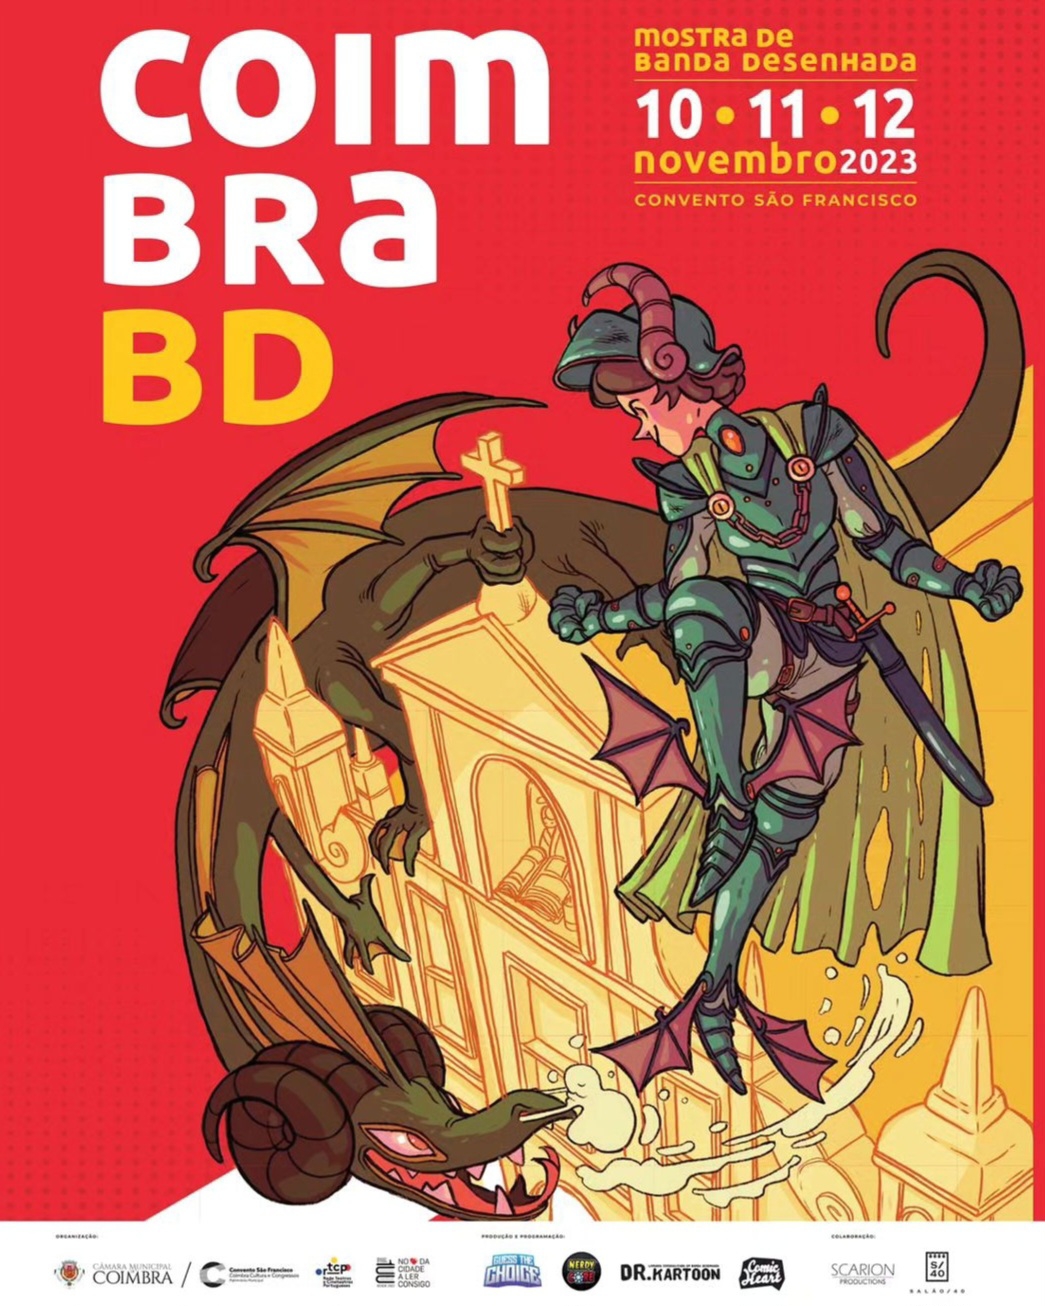 Calaméo - Álbuns de BD editados em Portugal [edição 2019]